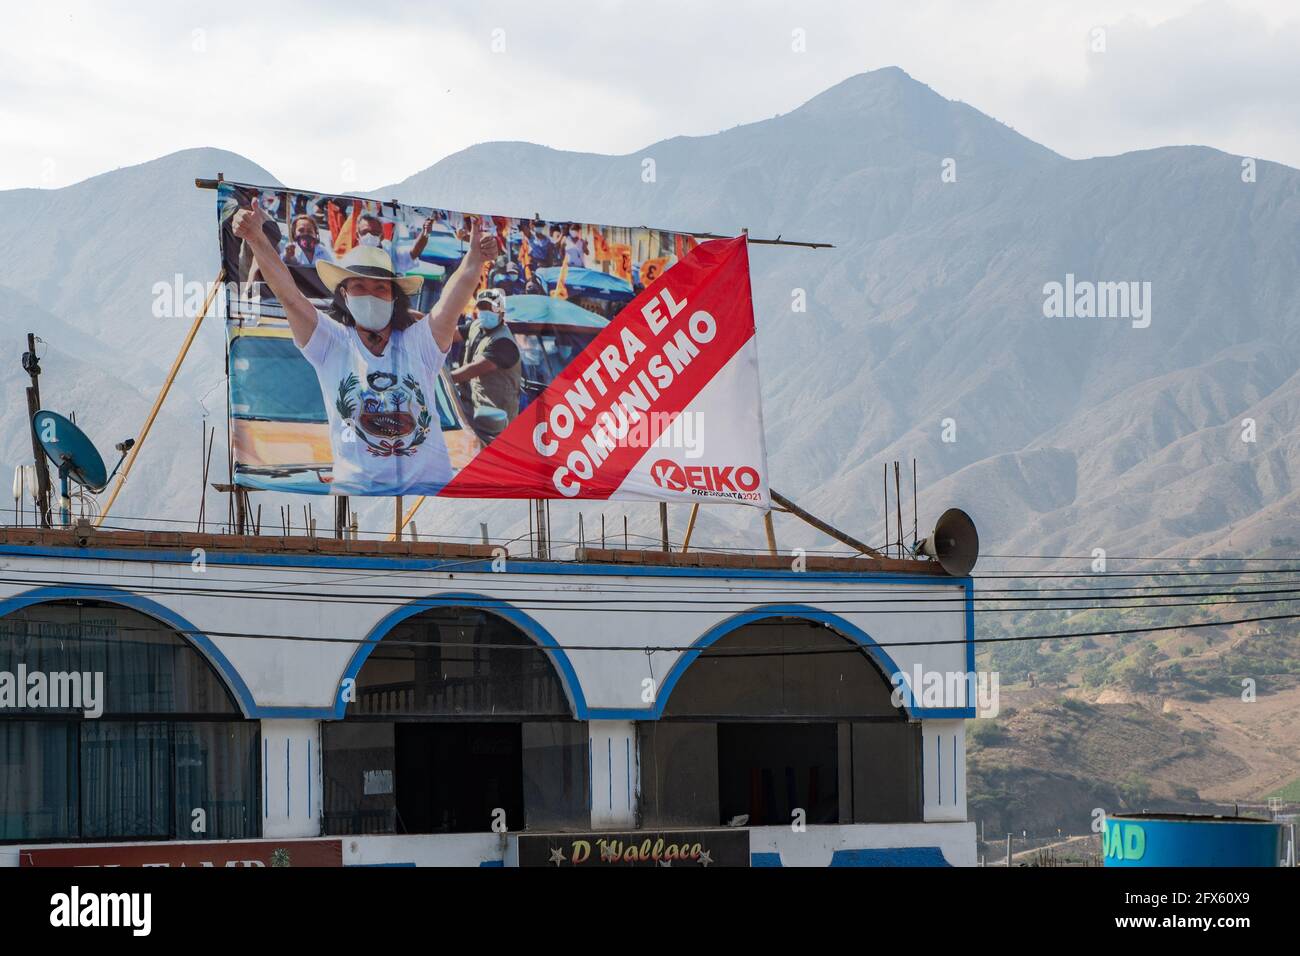 In una regione montagnosa settentrionale del Perù, un cartello elettorale presidenziale a sostegno di Keiko Fujimori dichiara la sua opposizione al comunismo. Foto Stock